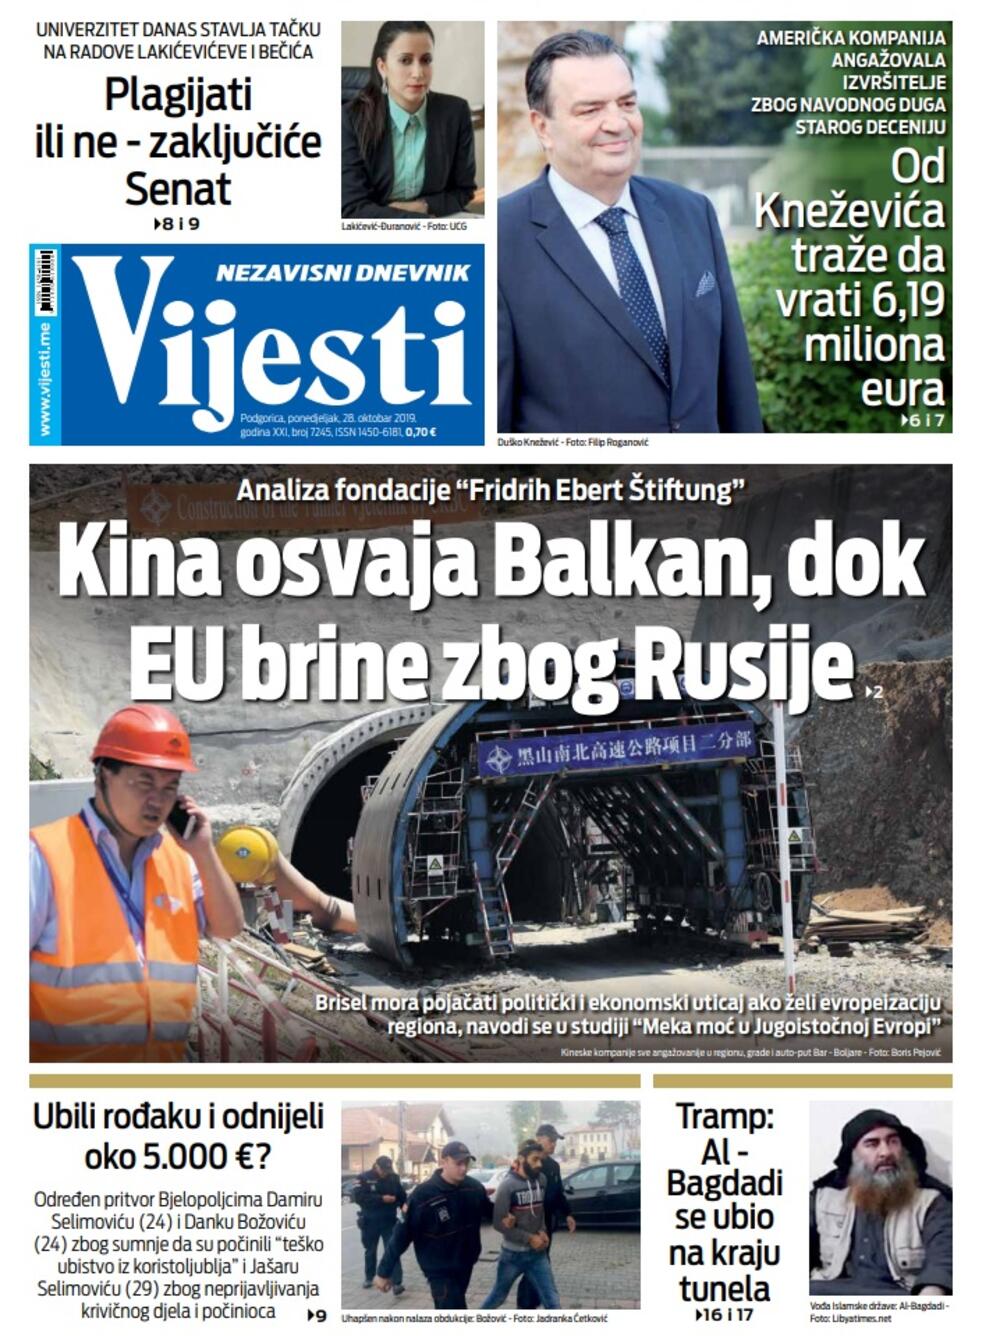 Naslovna strana "Vijesti" za 28. oktobar 2019., Foto: "Vijesti"